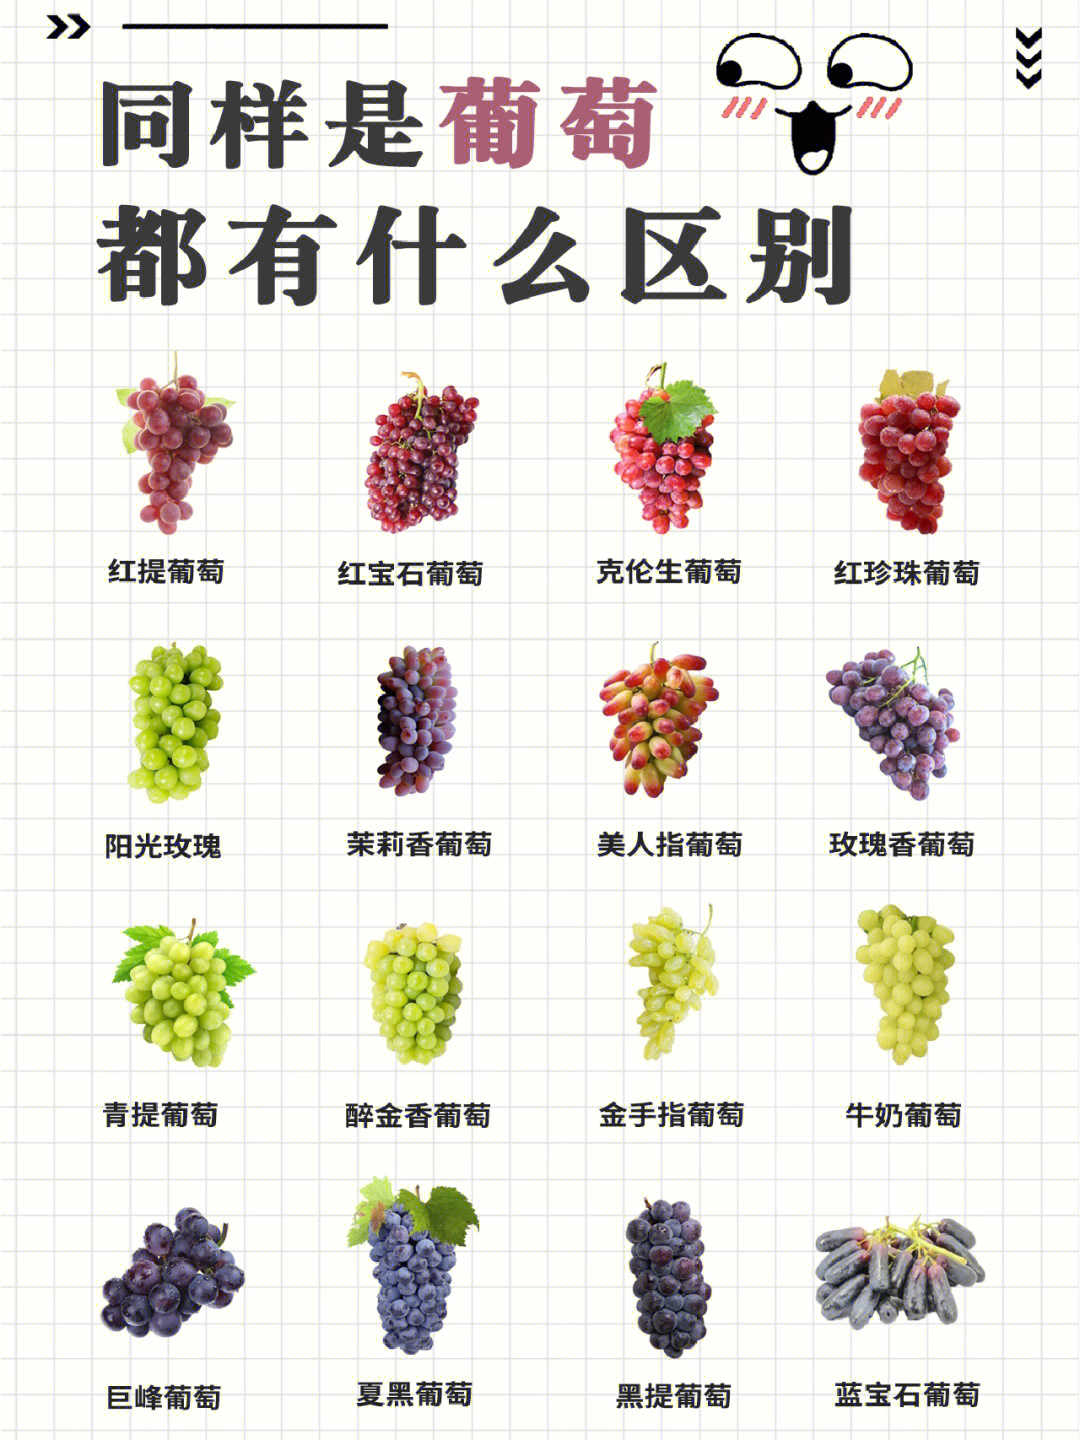 18大葡萄品种介绍图片图片